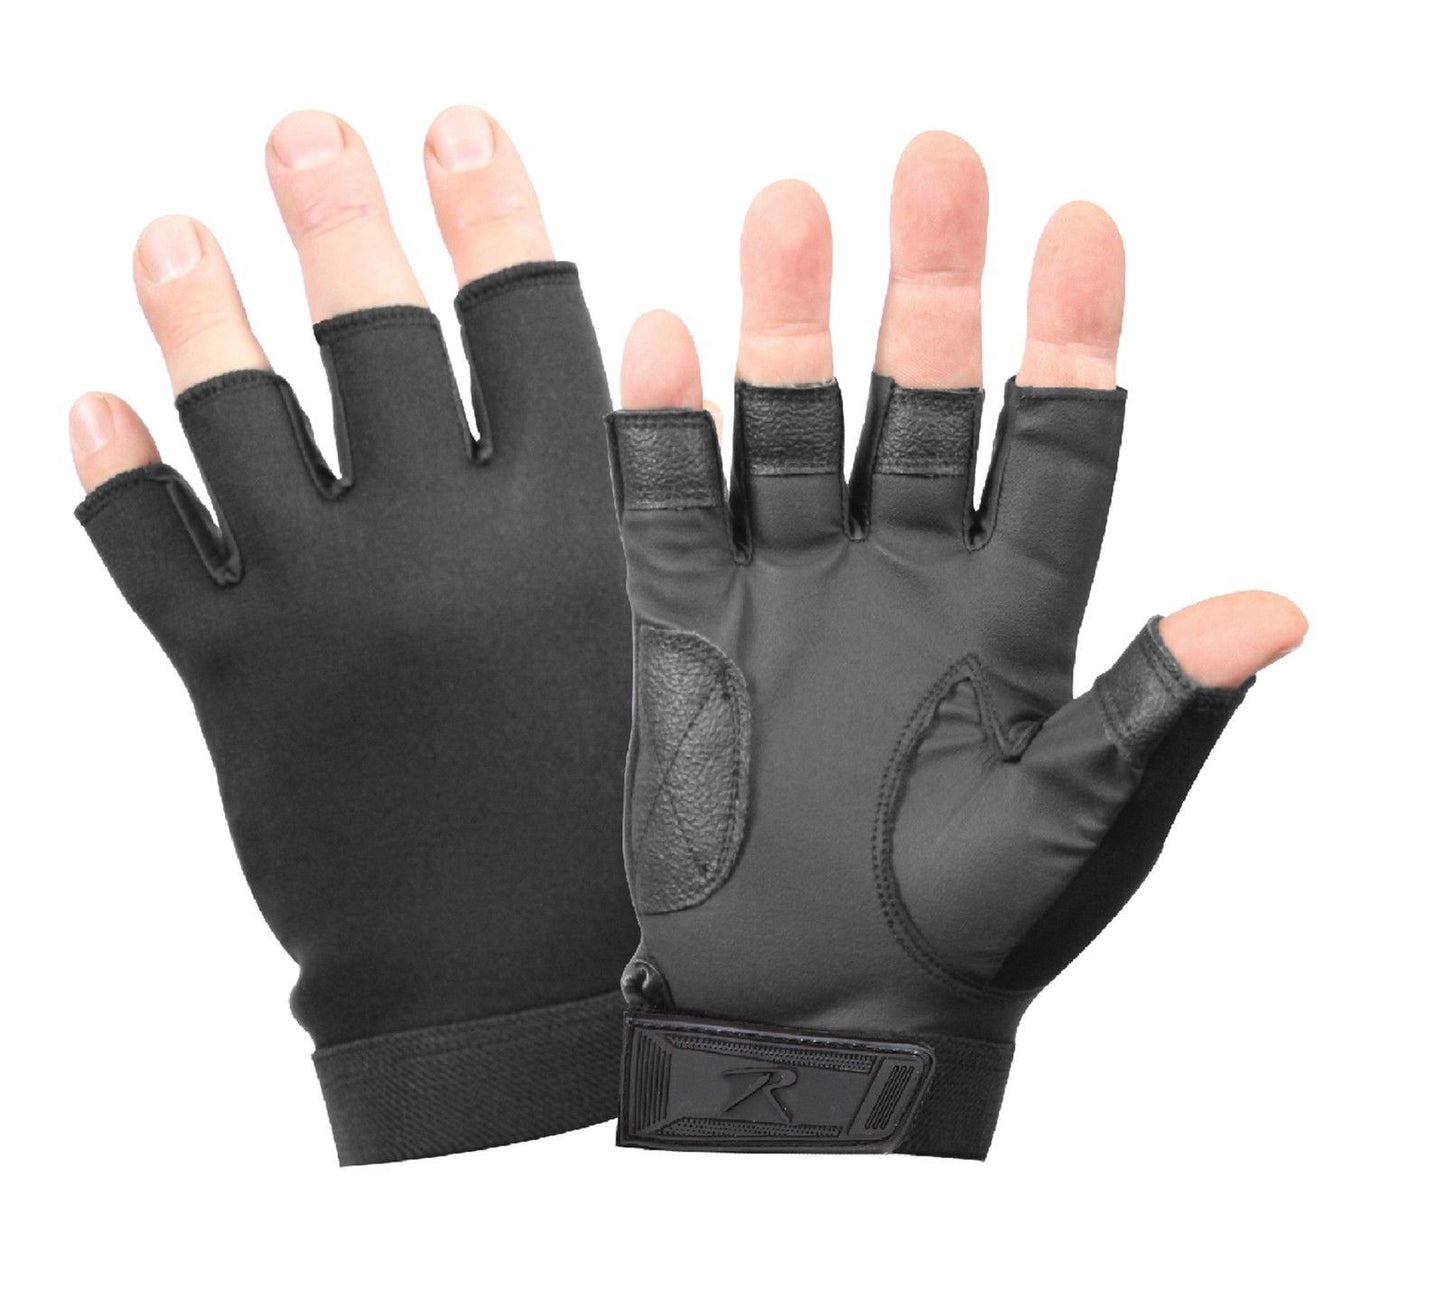 Black Fingerless Neoprene Gloves - Black Biker/Cycling Stretch Gloves